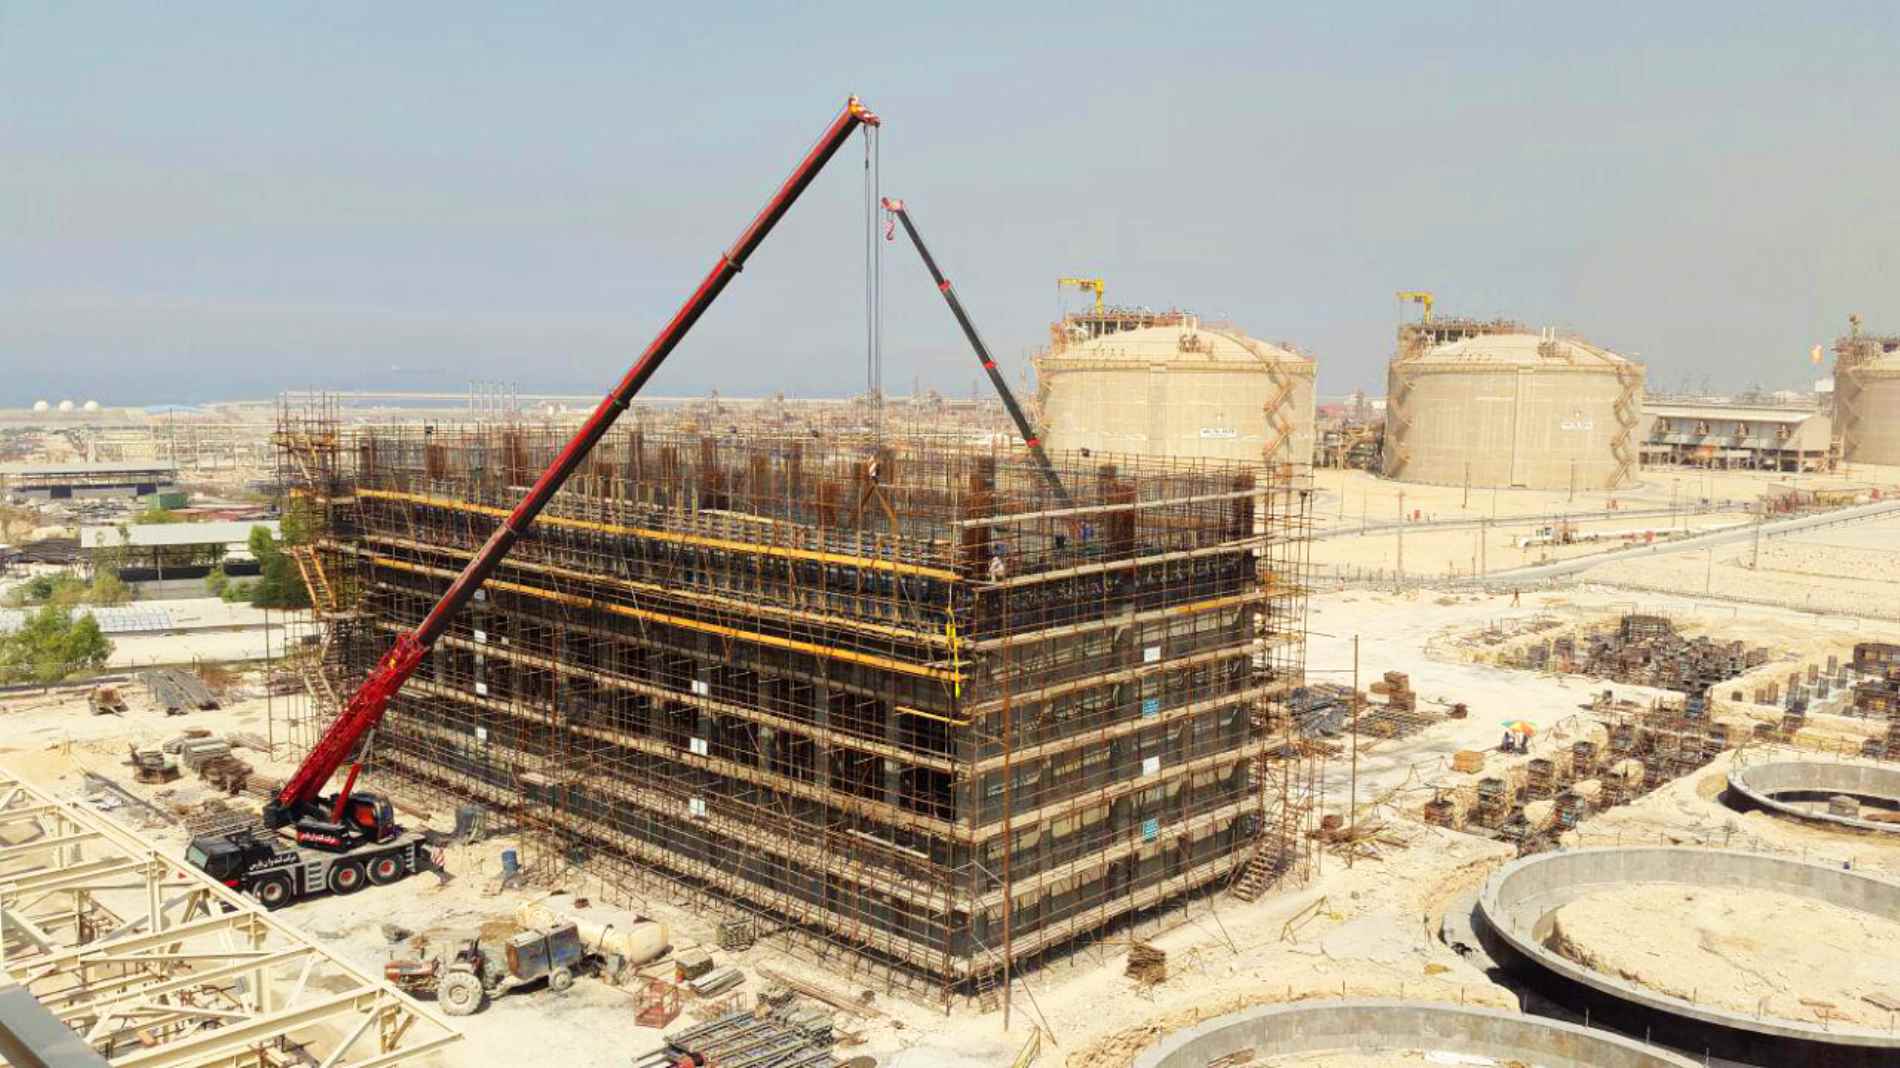  سیویل و سازه بتنی برج های خنک کننده سایت 3 پتروشیمی بوشهر